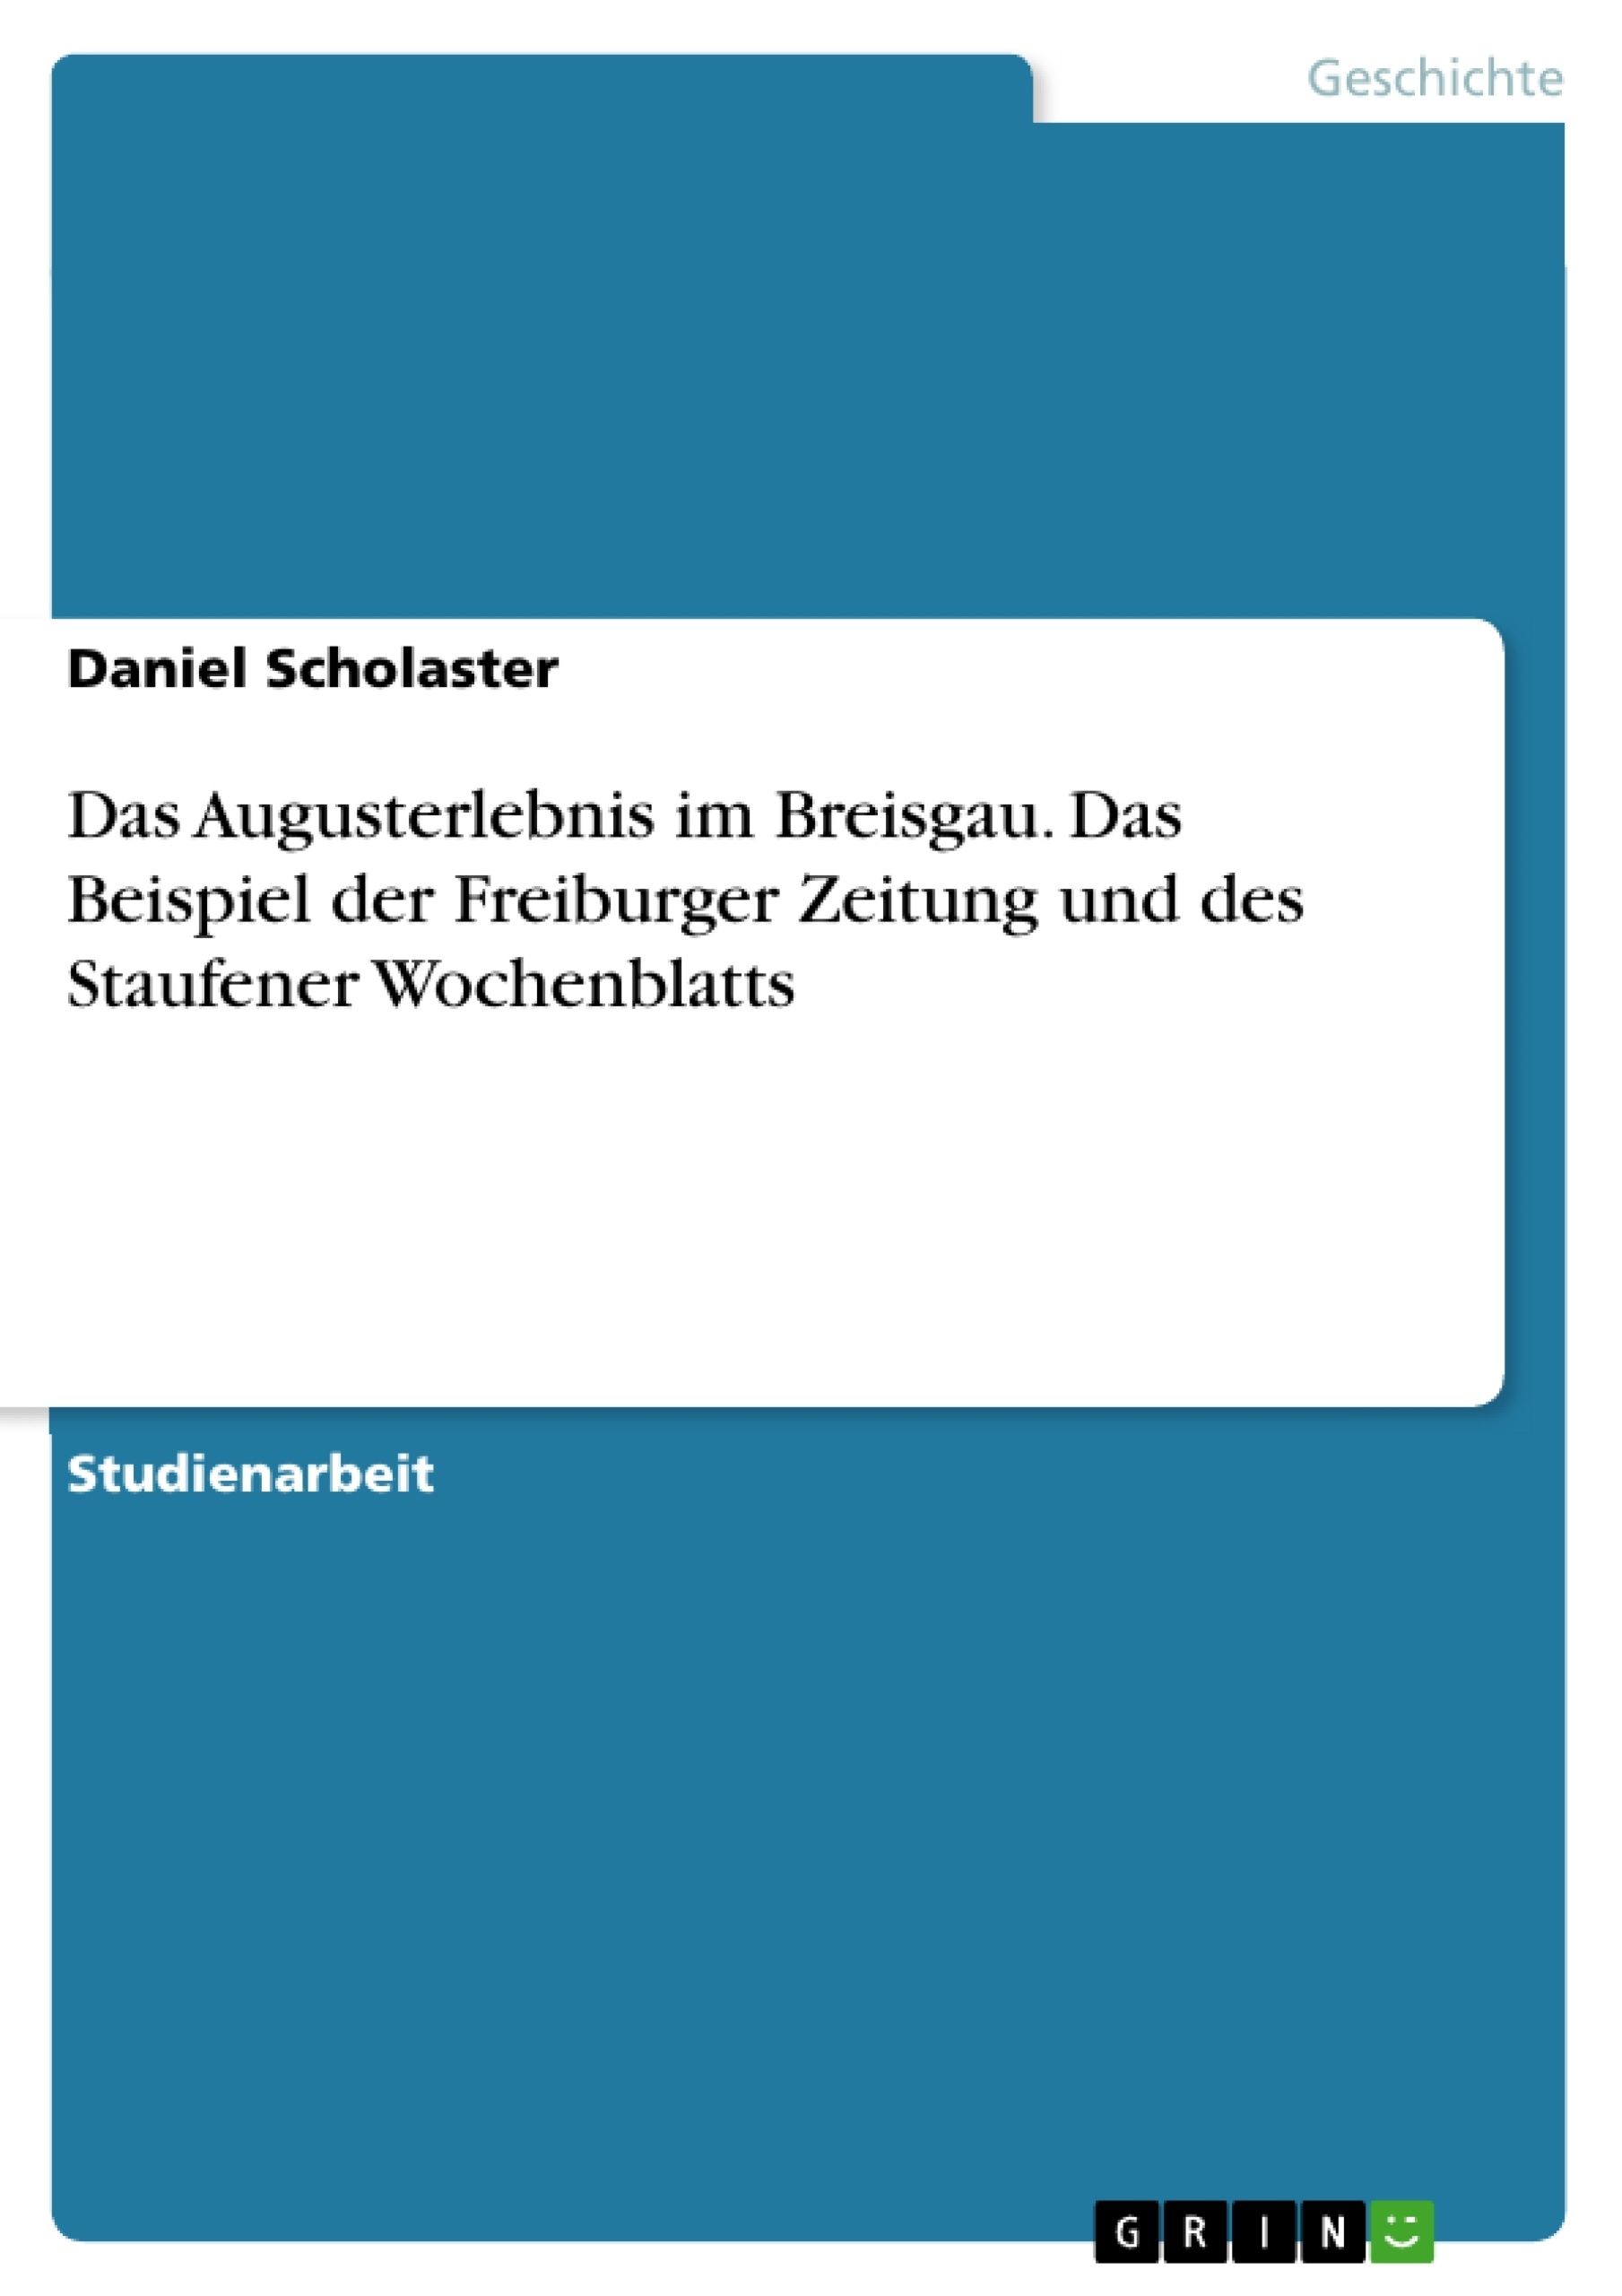 Title: Das Augusterlebnis im Breisgau. Das Beispiel der Freiburger Zeitung und des Staufener Wochenblatts